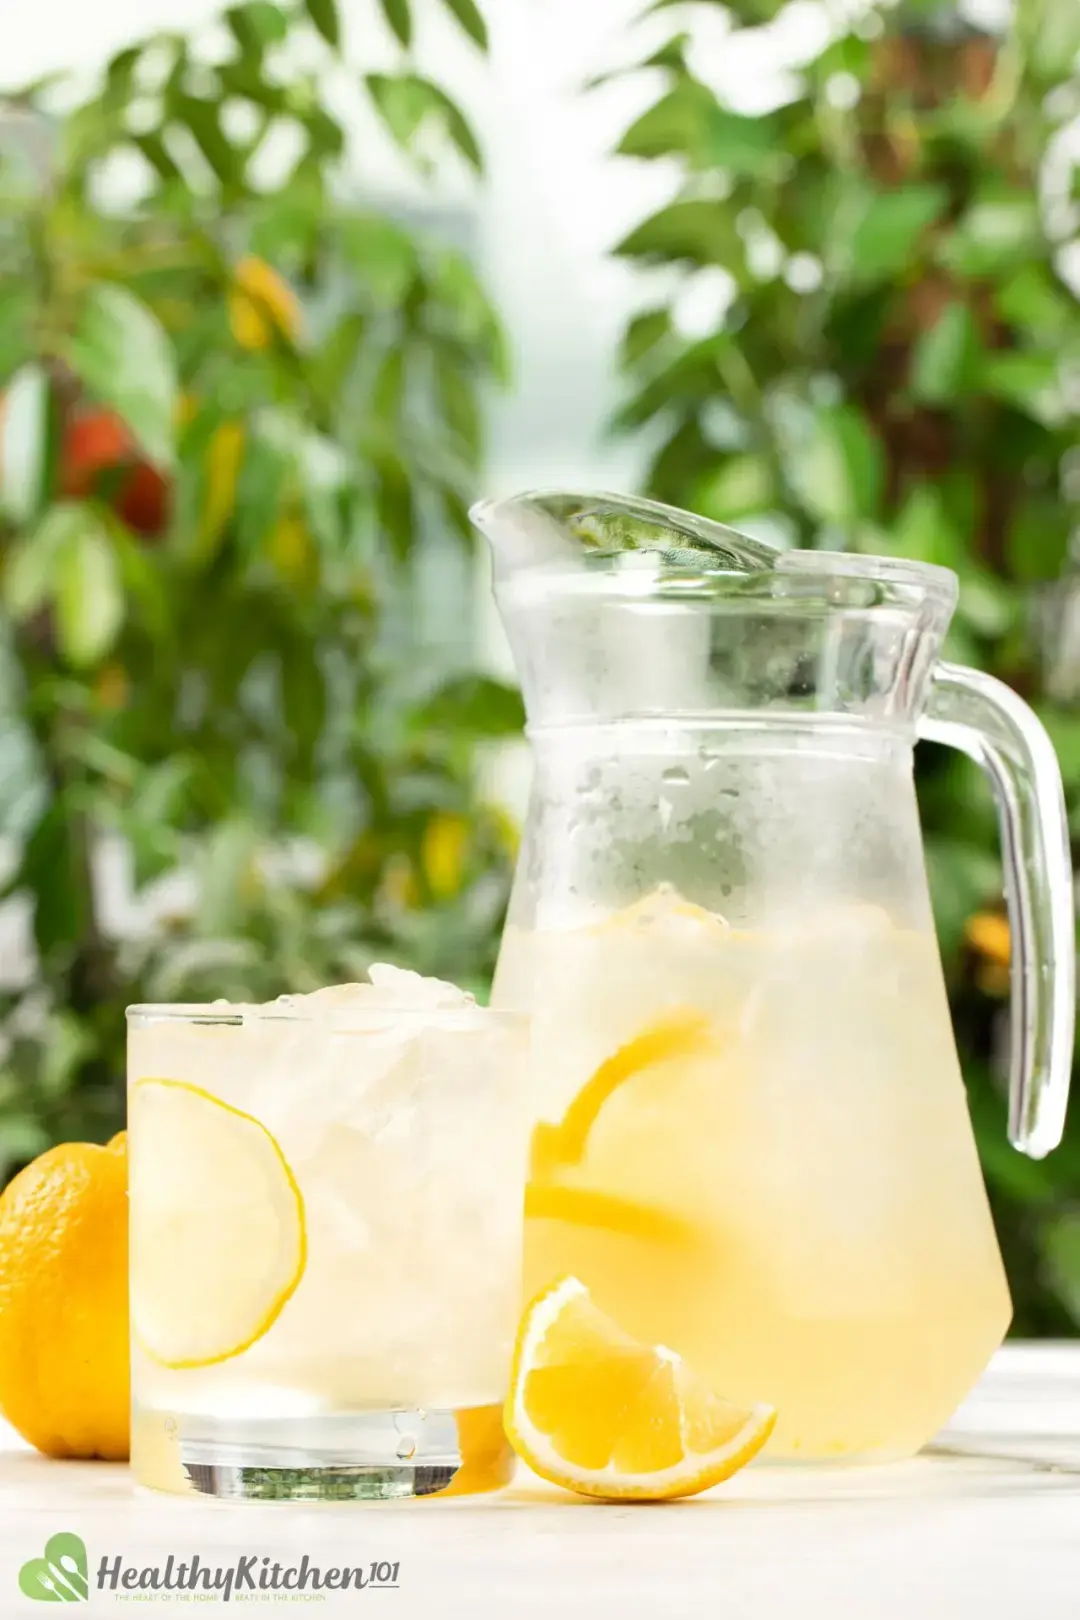 How to Make Homemade Lemonade Recipe